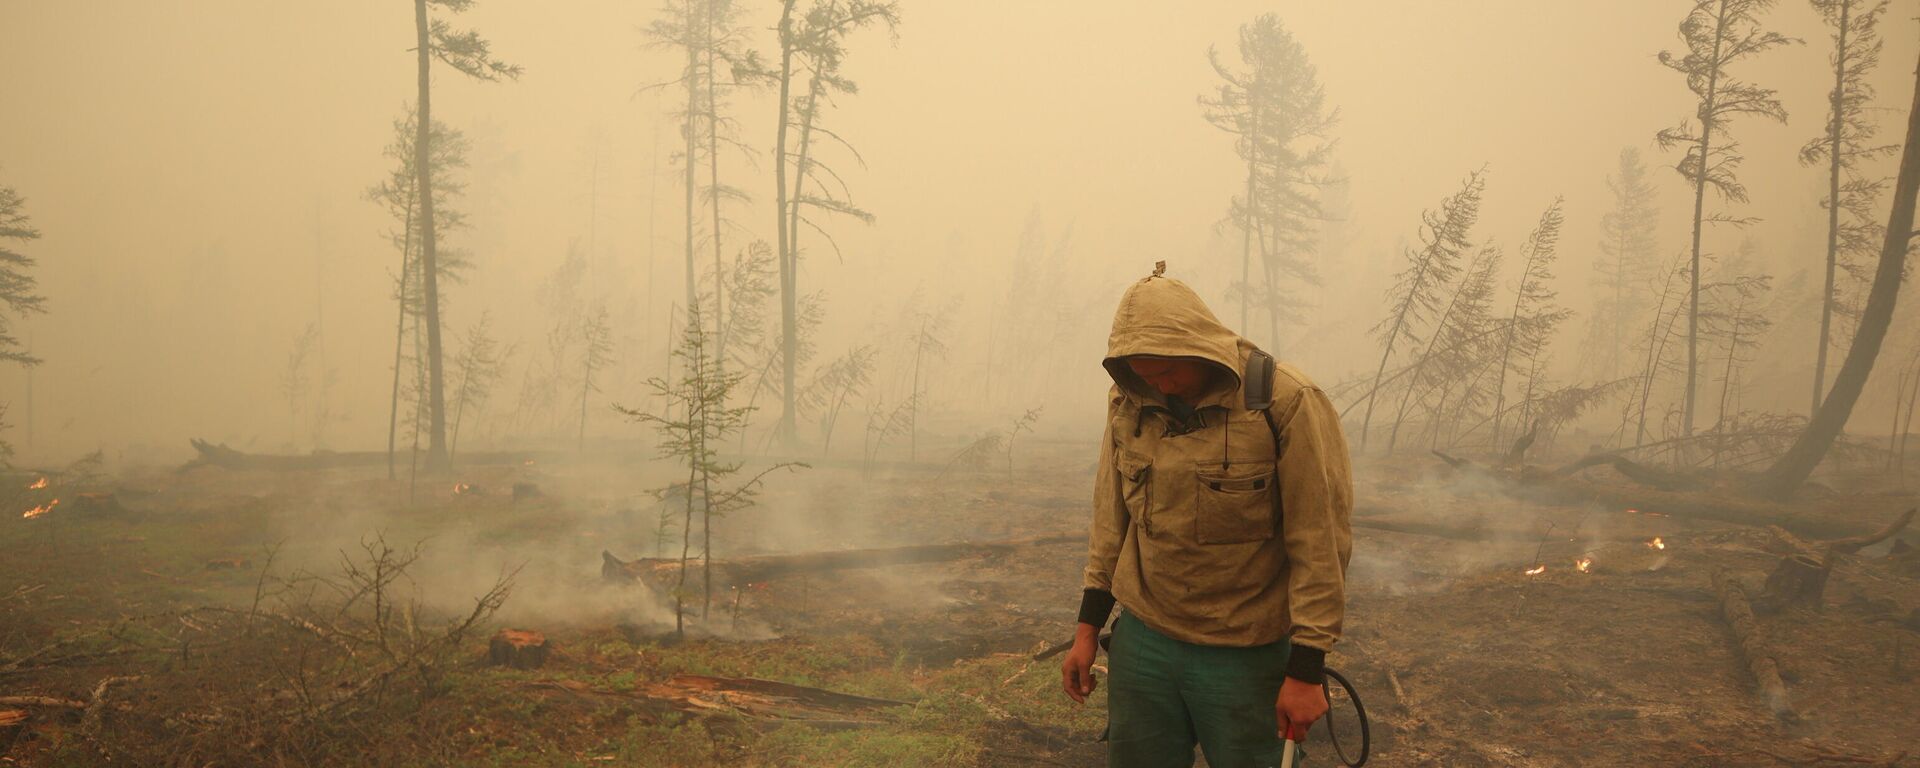 Un especialista del servicio local de protección forestal extingue un incendio forestal cerca del pueblo de Magaras en la región de Yakutia, Rusia, el 17 de julio de 2021 - Sputnik Mundo, 1920, 19.08.2021